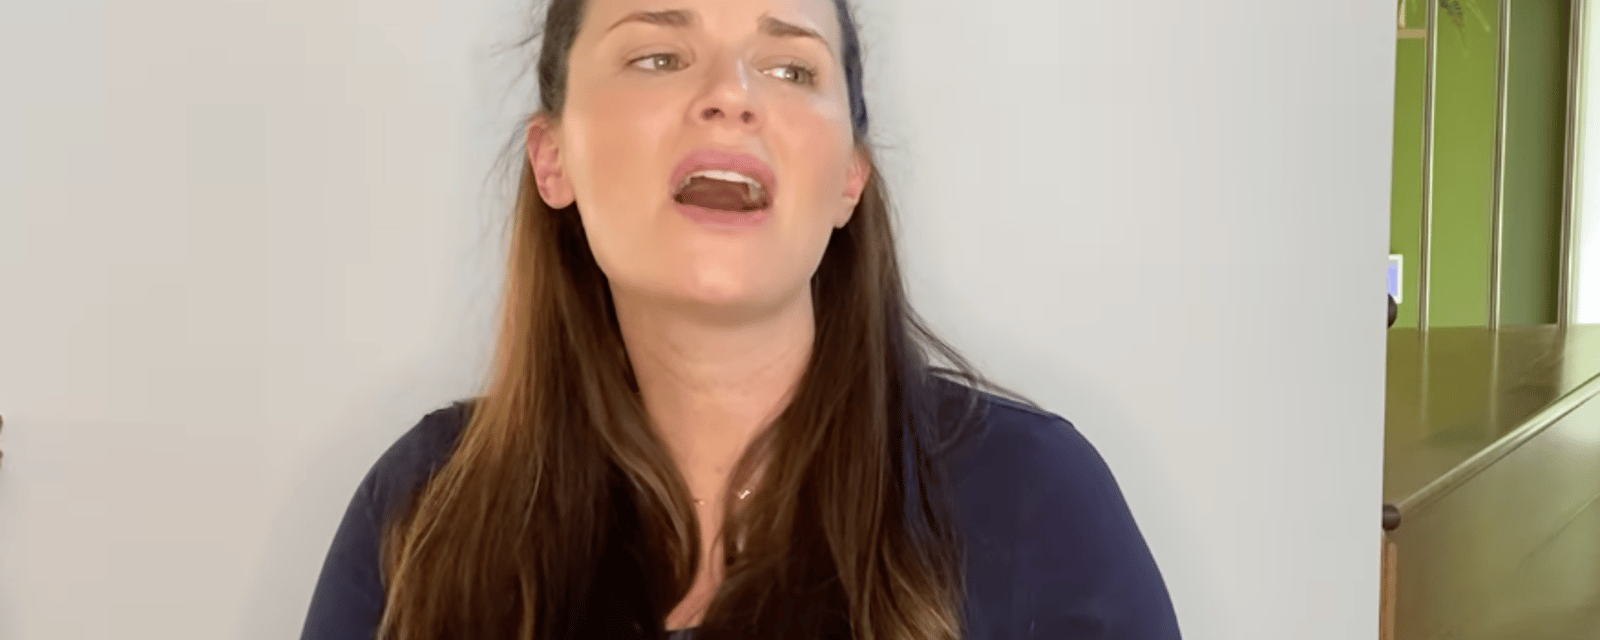 Marie-Ève Janvier enflamme le web en chantant dans une rare vidéo